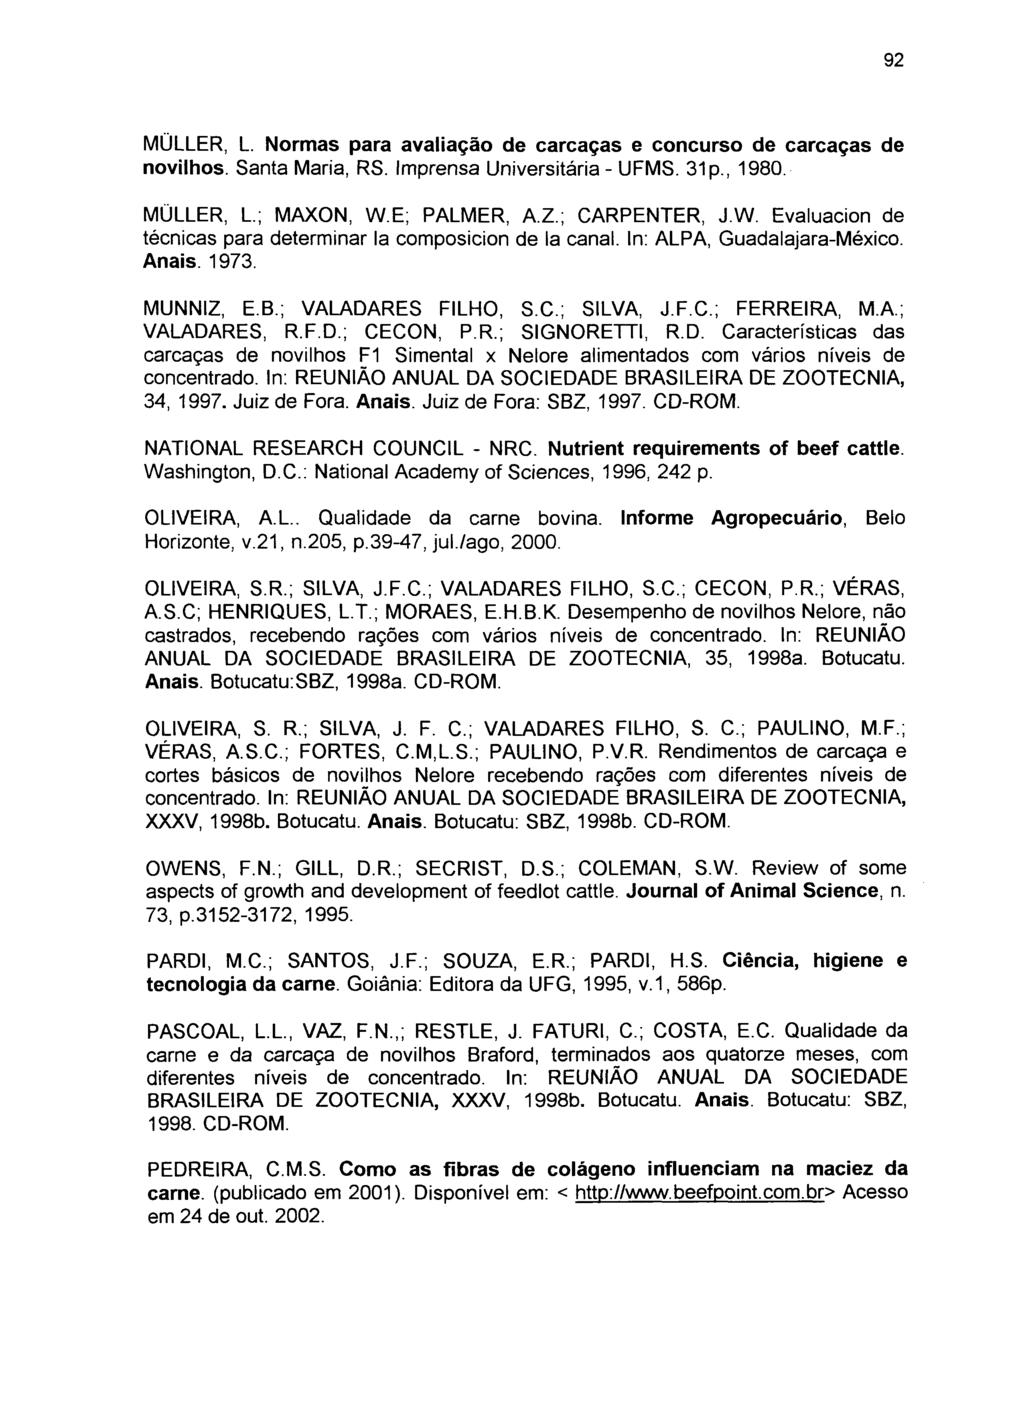 MÜLLER, L. Normas para avaliação de carcaças e concurso de carcaças de novilhos. Santa Maria, RS. Imprensa Universitária - UFMS. 31 p., 1980. MÜLLER, L.; MAXON, W.